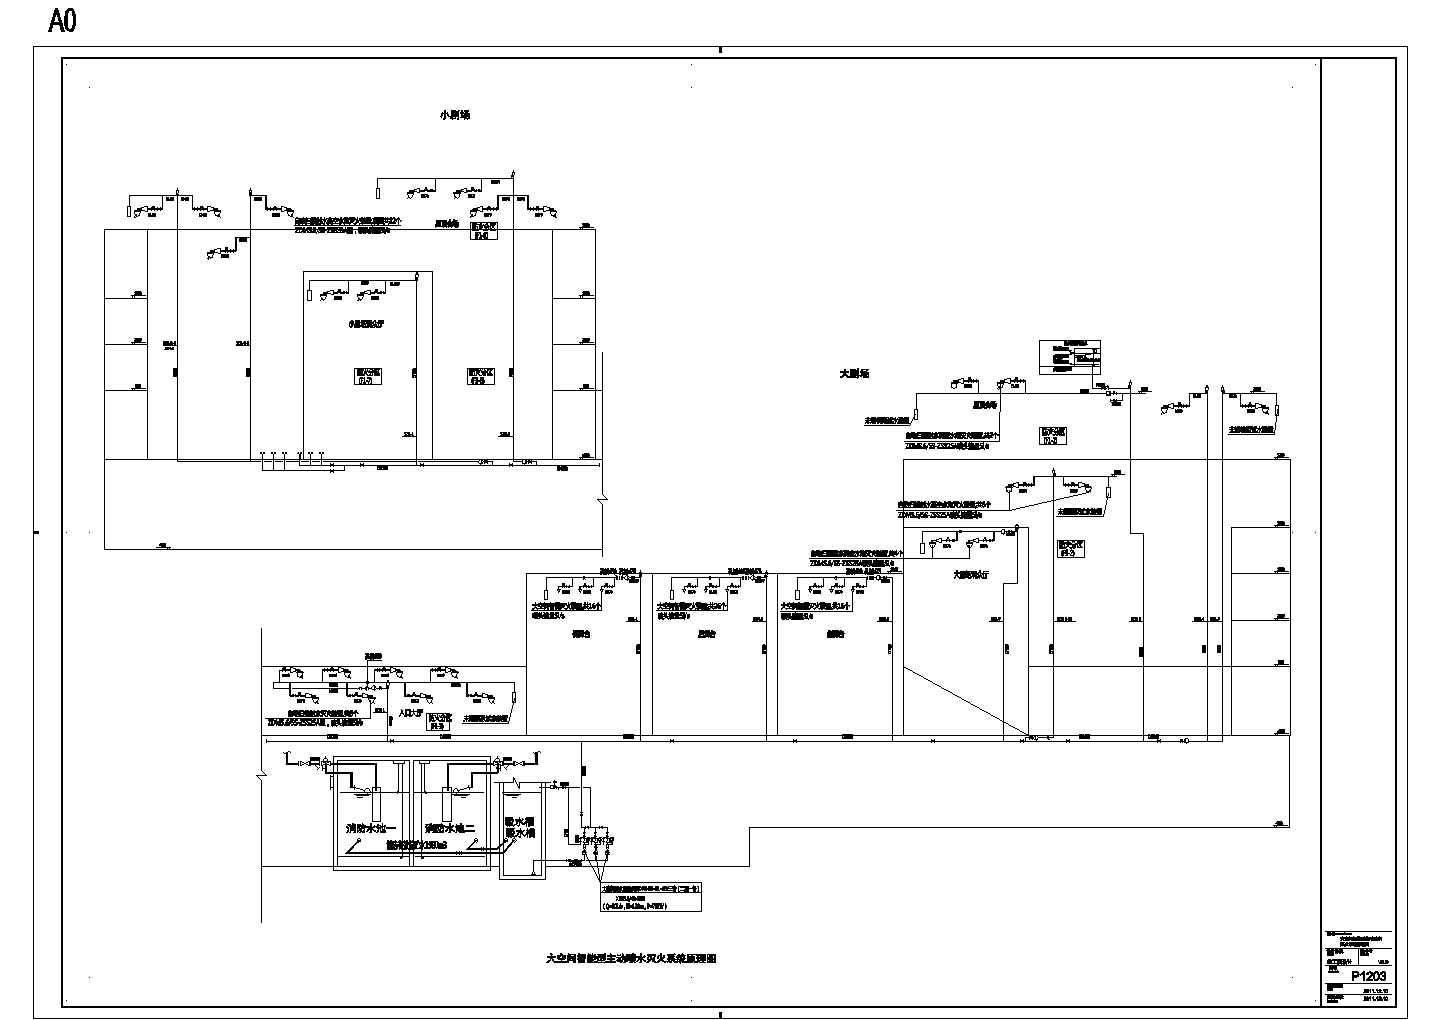 P1203大空间智能型主动喷水灭火系统原理图